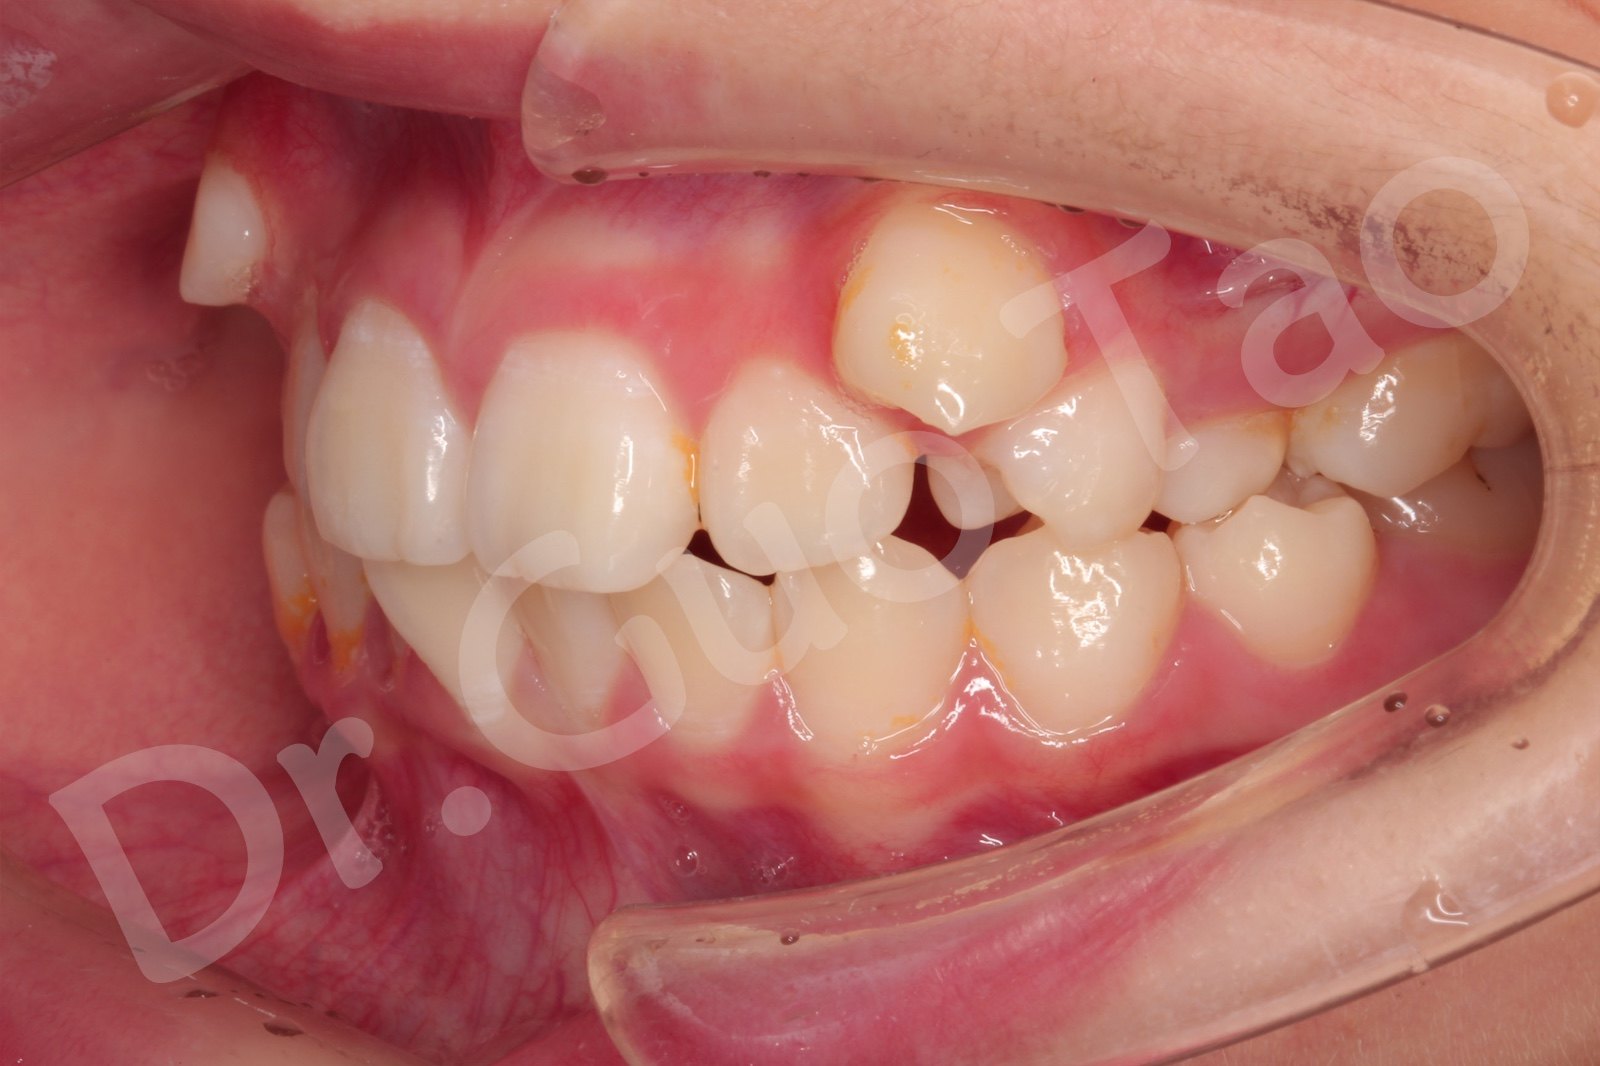 口内左侧照片,帮助医生判断左侧牙齿的错位情况以及咬合关系